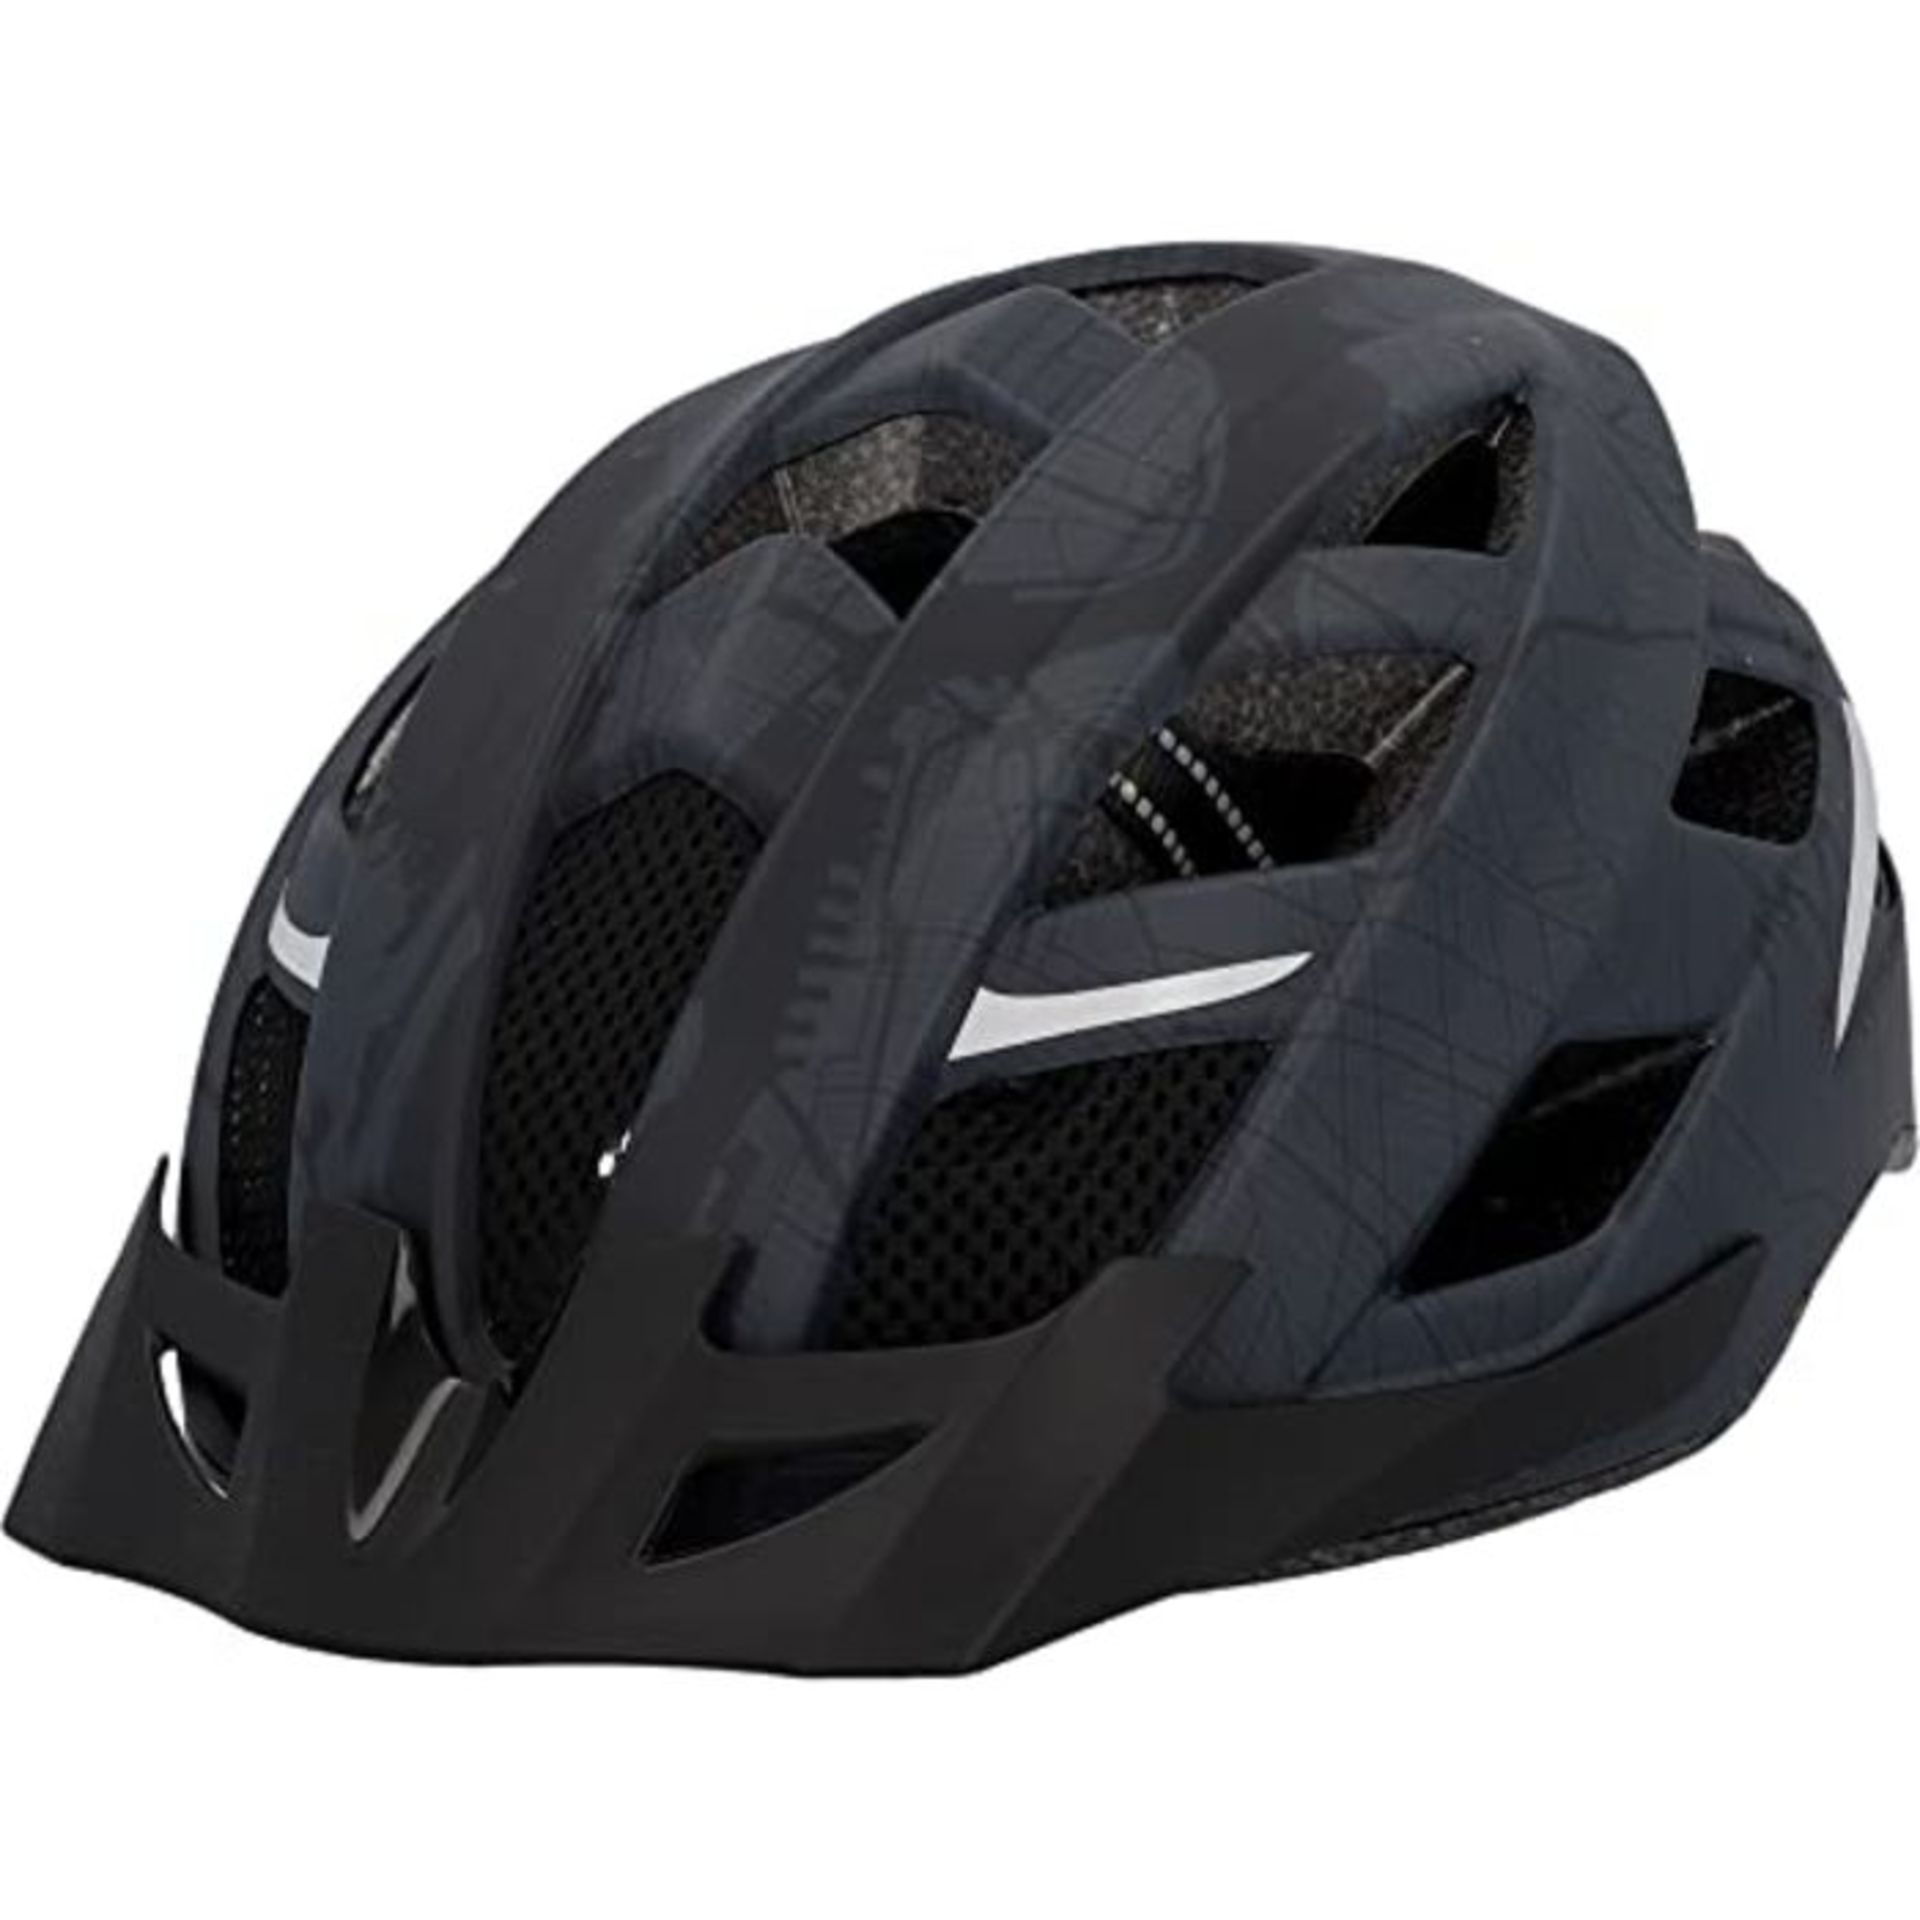 Fischer Unisex - Adult 50449 Urban Helmet, Matte Anthracite, S-M